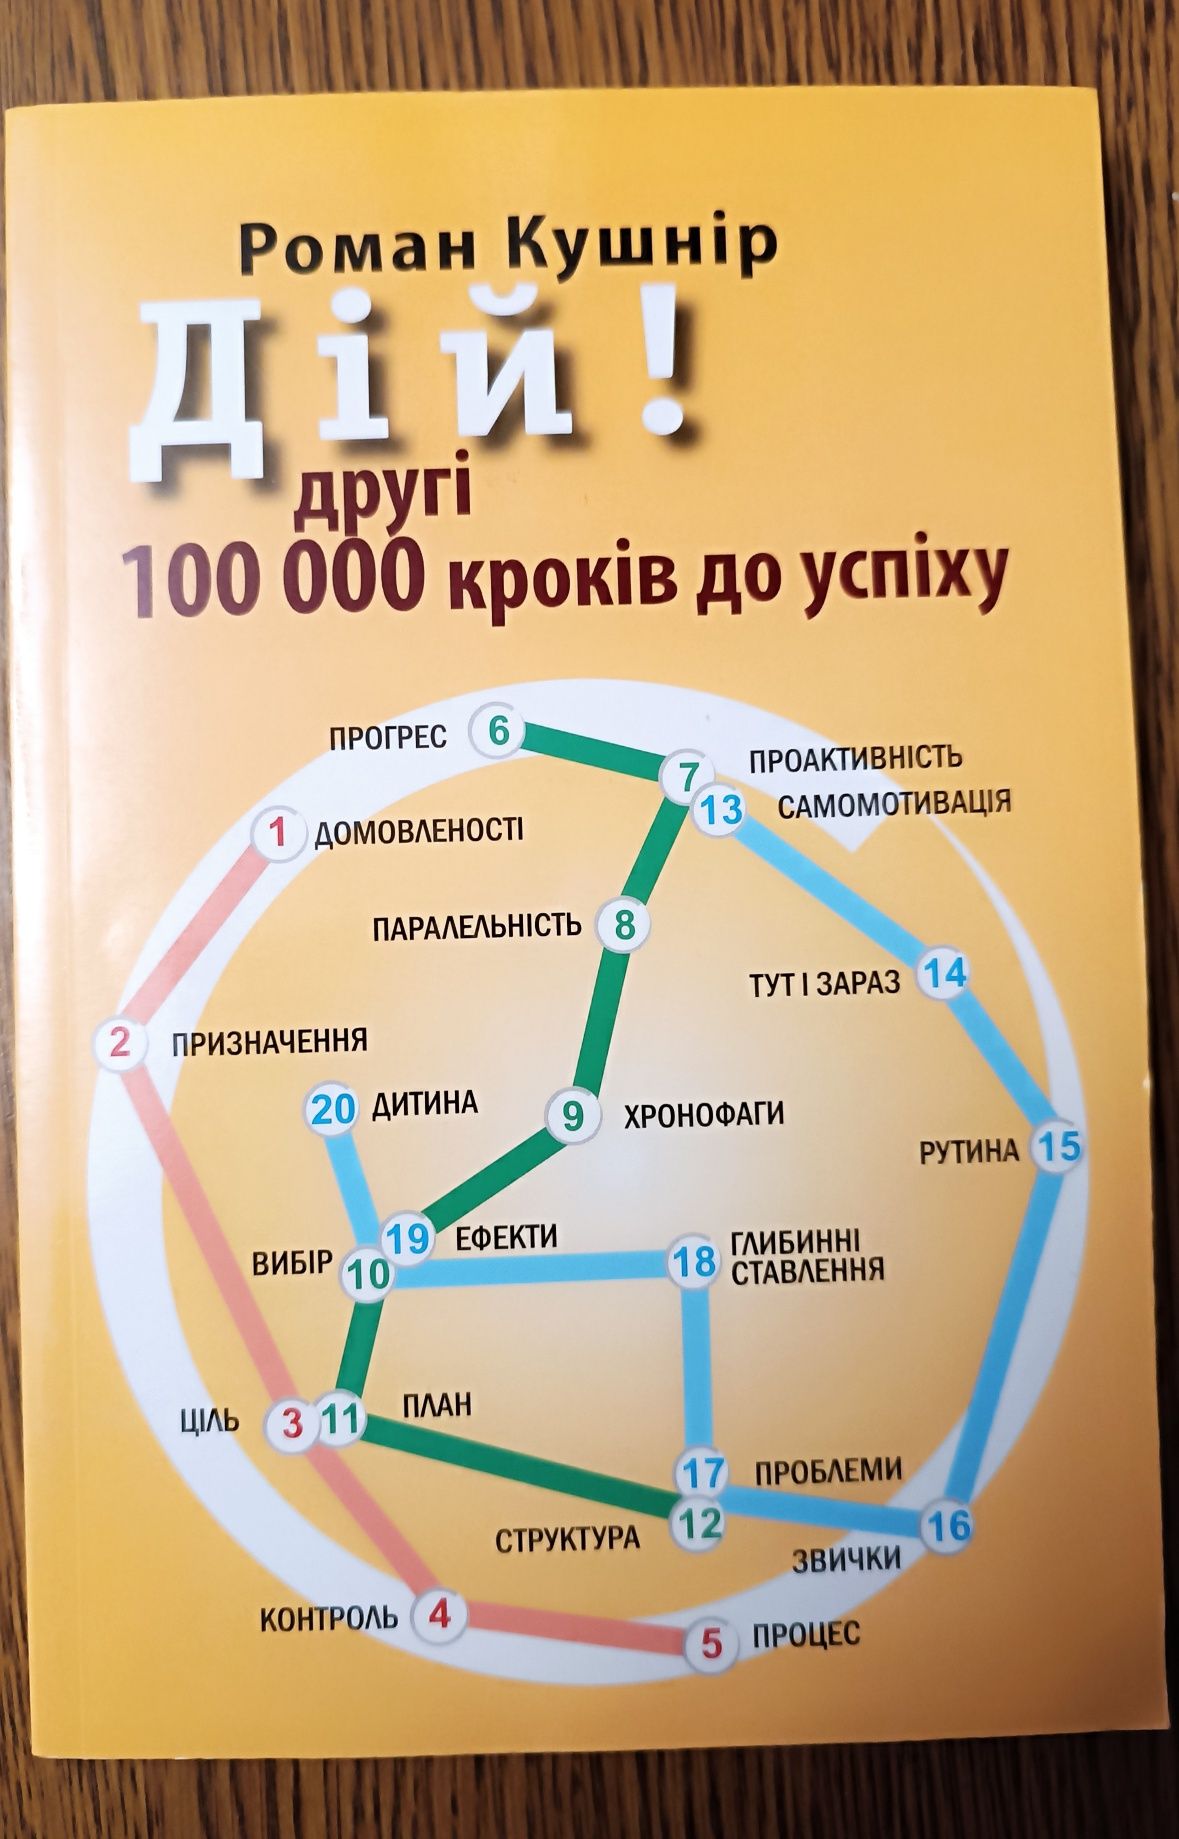 Роман Кушнір. 100 000 кроків до успіху.